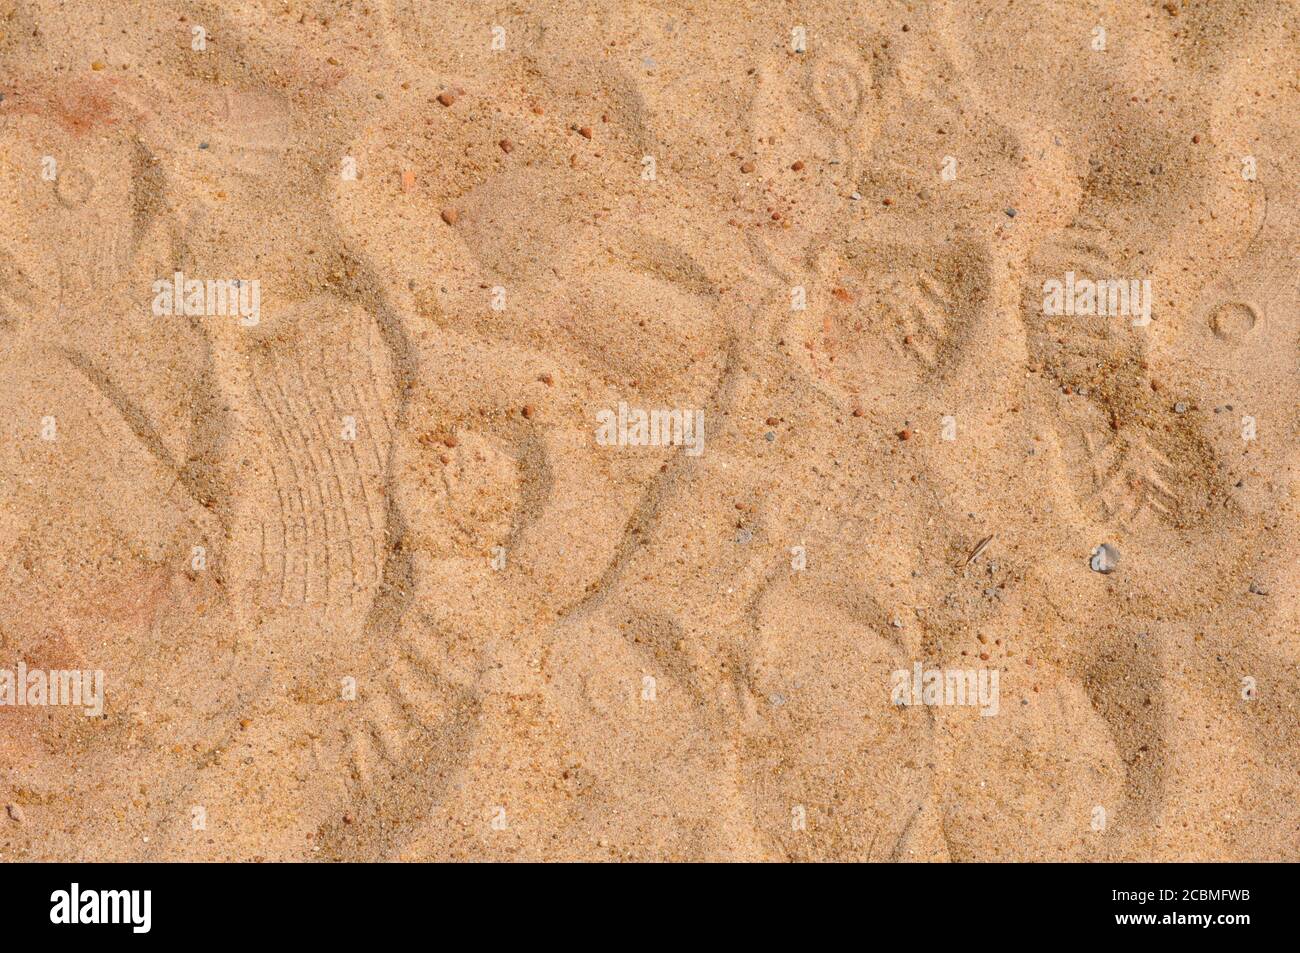 Sand. Strand- oder Flusssand für den zivilen Bau, Zoom-Foto, Texturstil, Szene oder abstrakter Hintergrund, Farbfoto, Brasilien, Südamerika Stockfoto